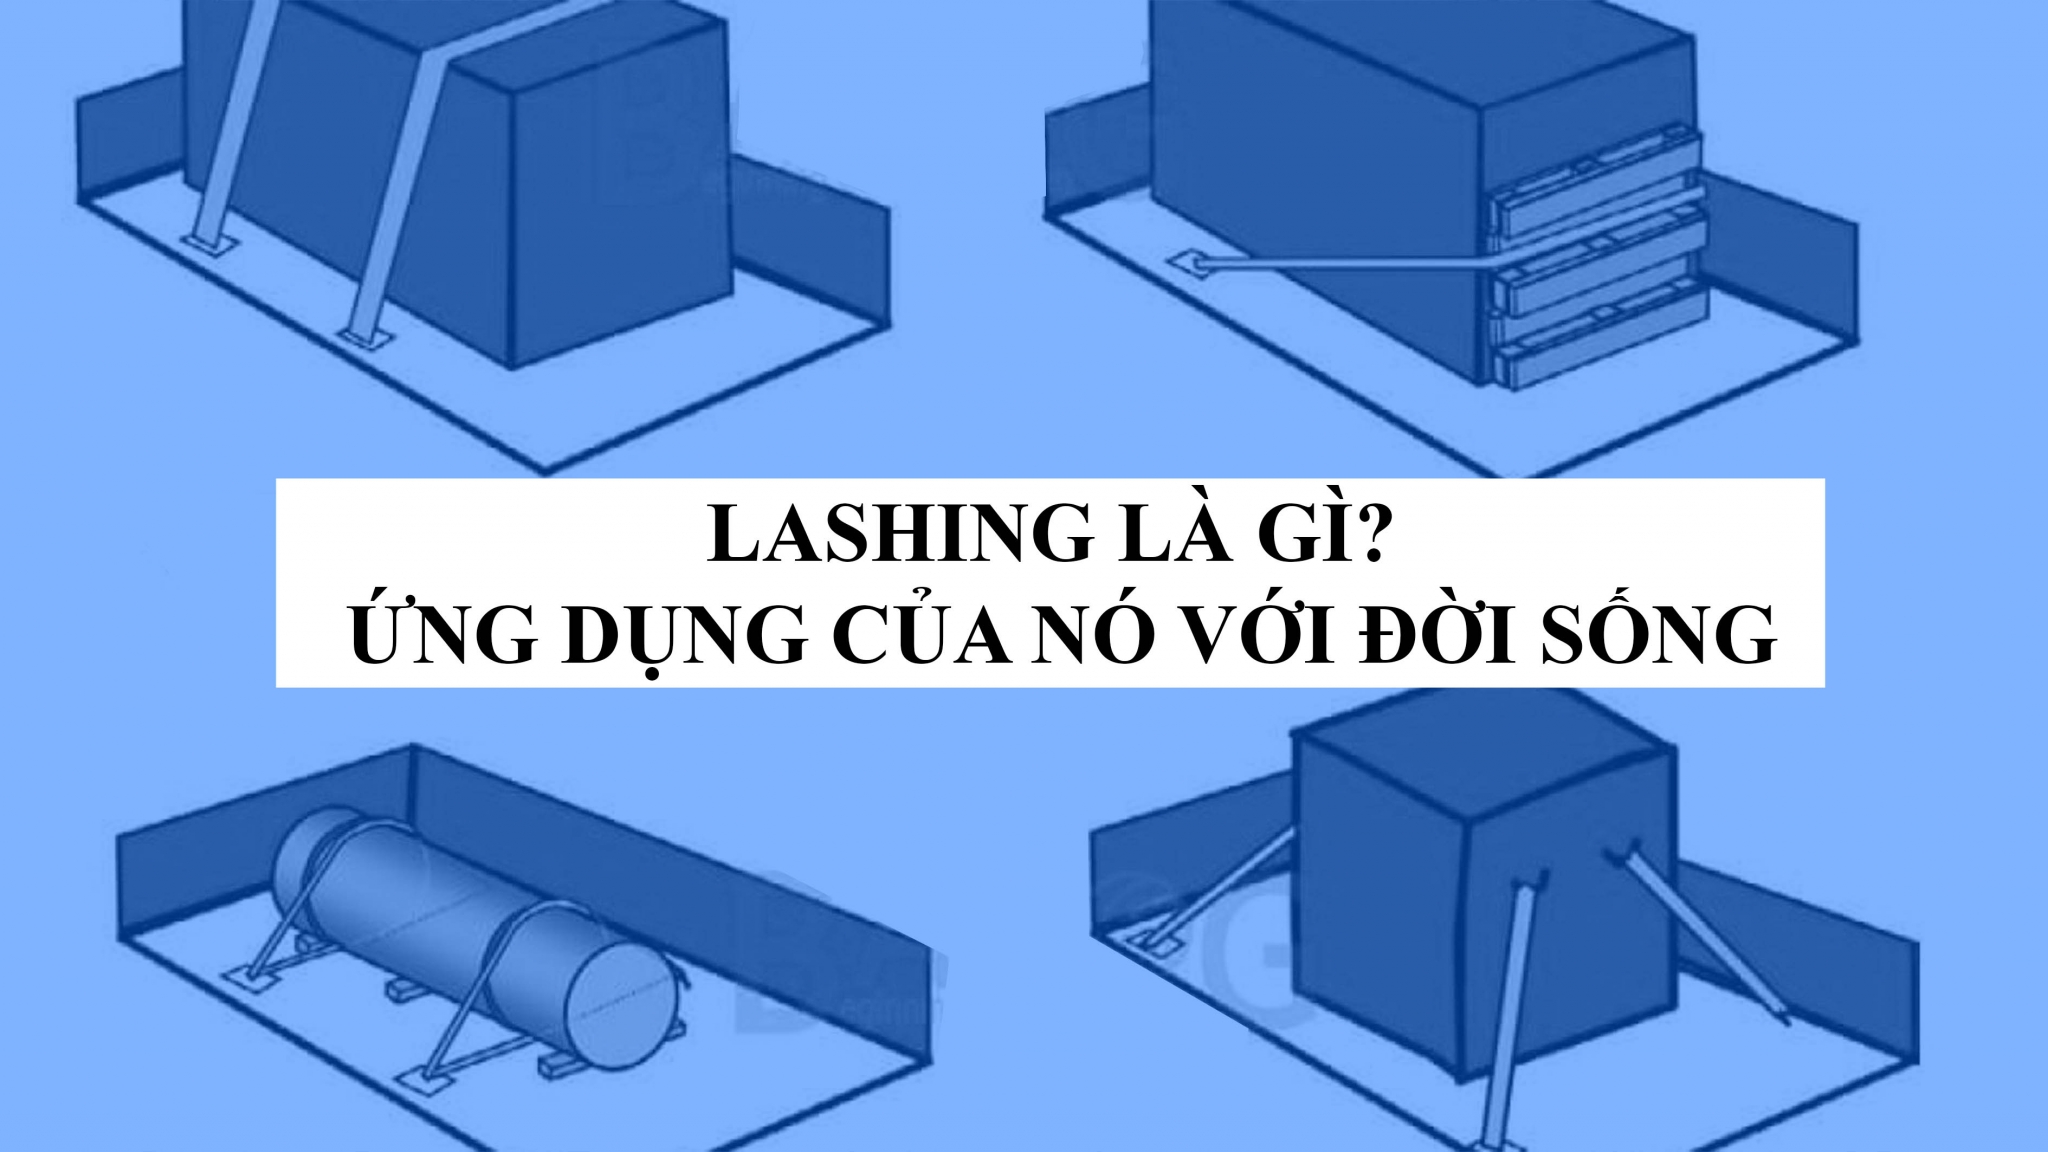 LASHING LÀ GÌ? Tổng hợp kiến thức về Lashing